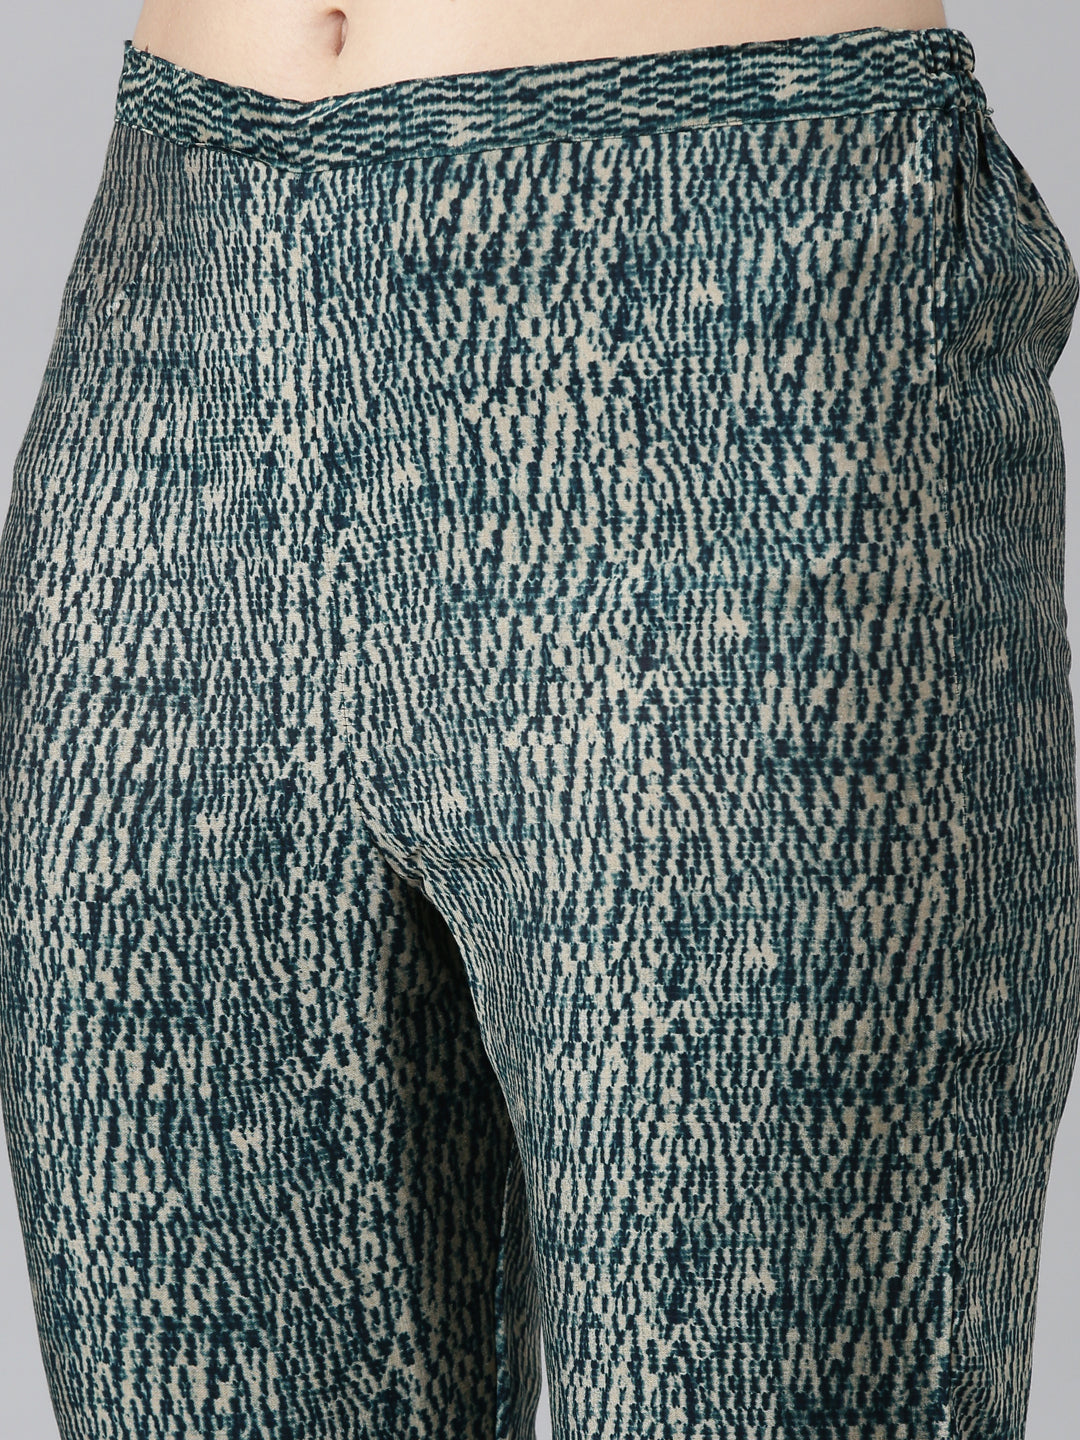 Neerus Green Regular Straight Printed Kurta And Trousers With Dupatta